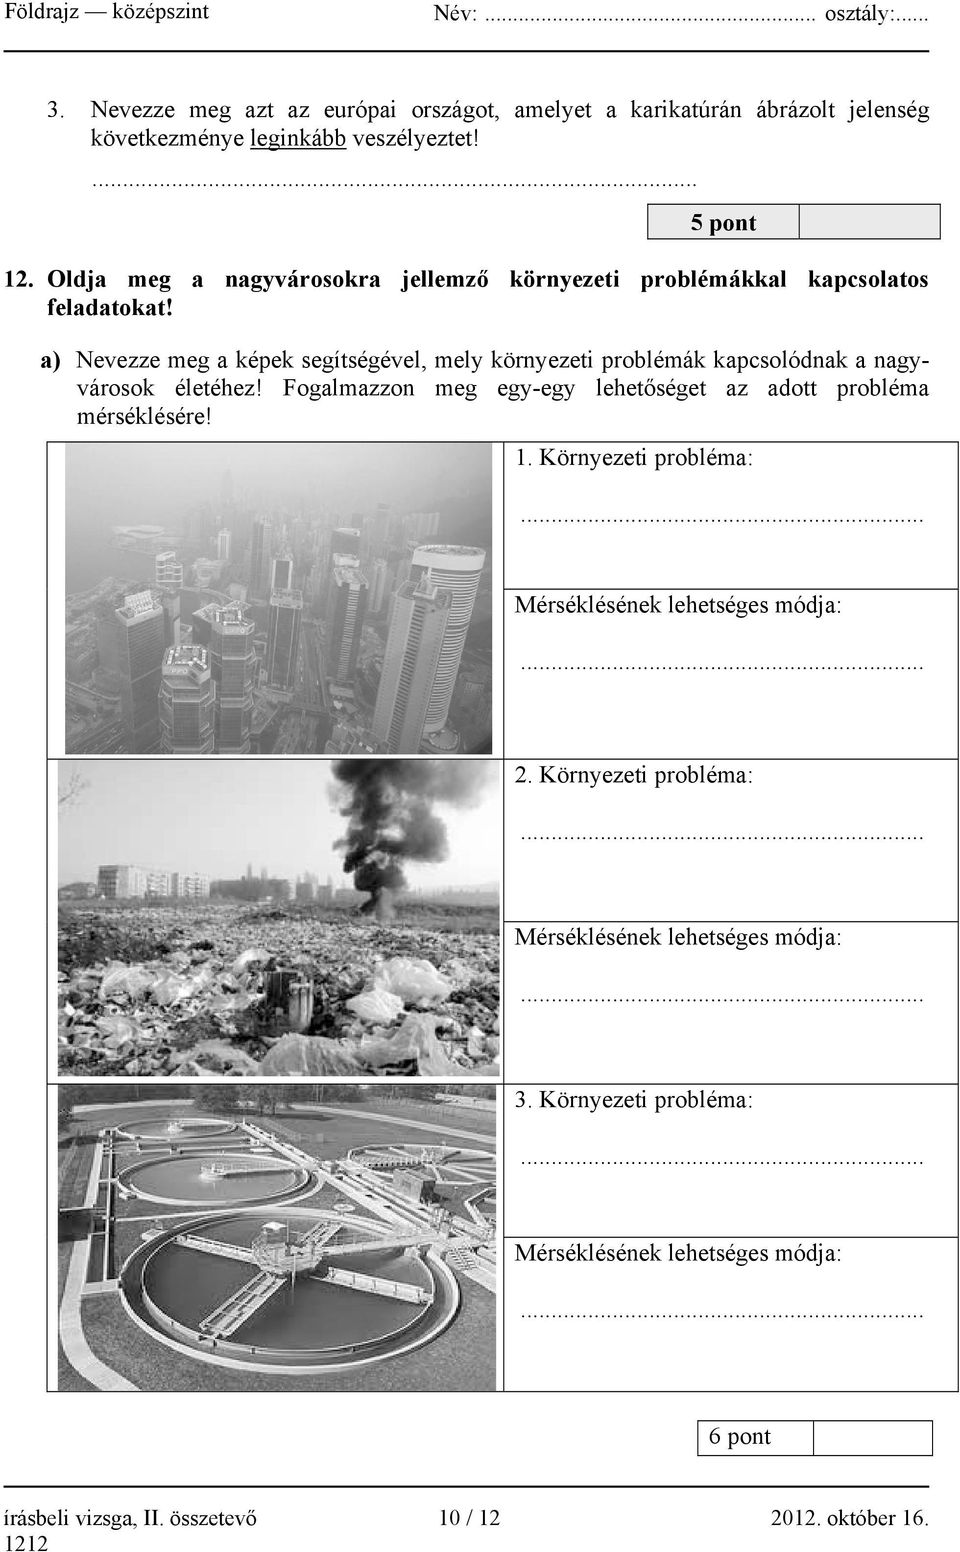 a) Nevezze meg a képek segítségével, mely környezeti problémák kapcsolódnak a nagyvárosok életéhez!